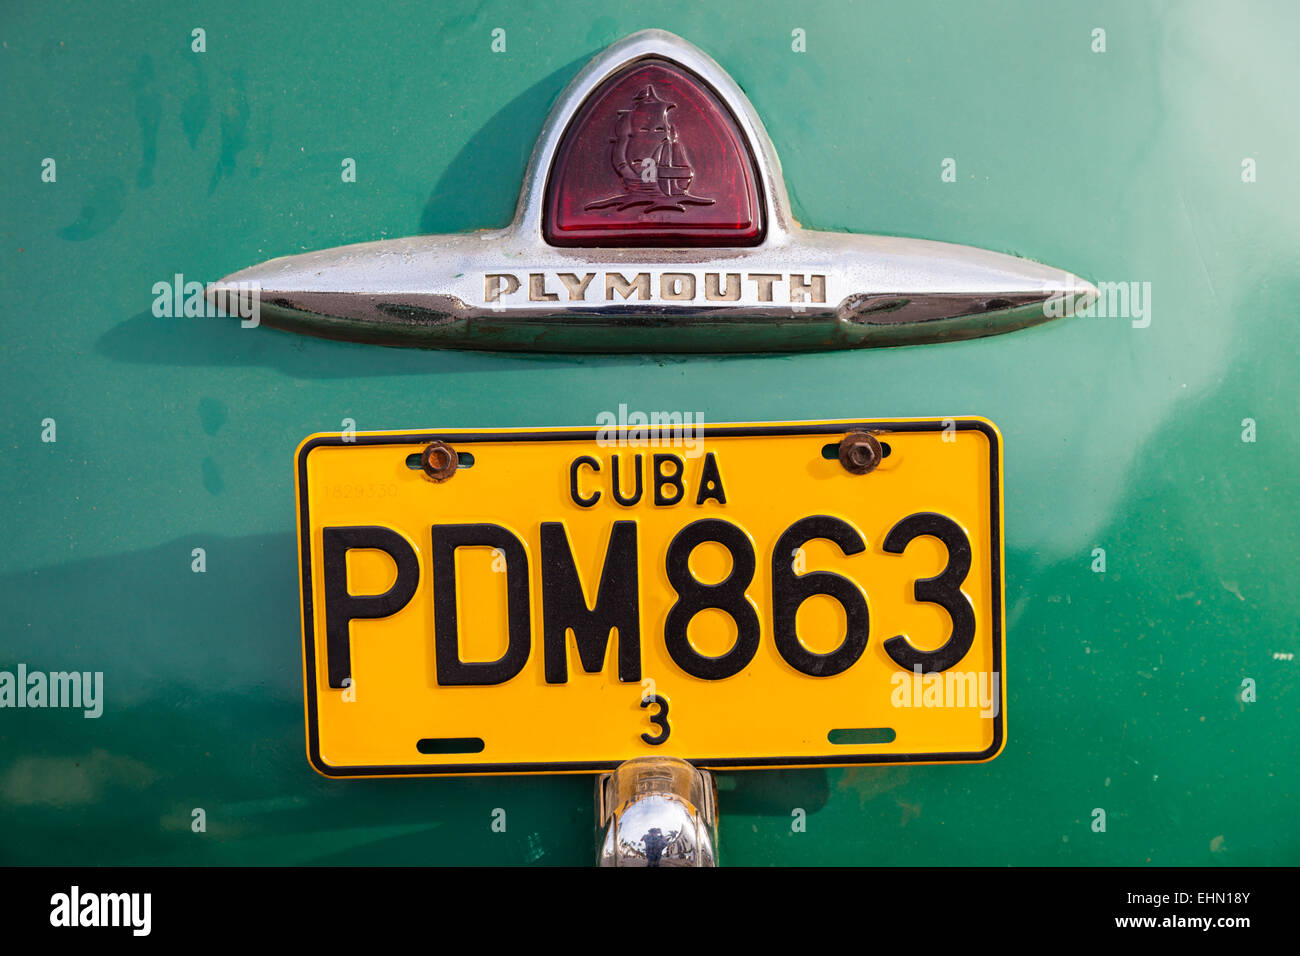 Kfz-Kennzeichen eines amerikanischen Autos aus den 50er Jahren, Kuba. Stockfoto